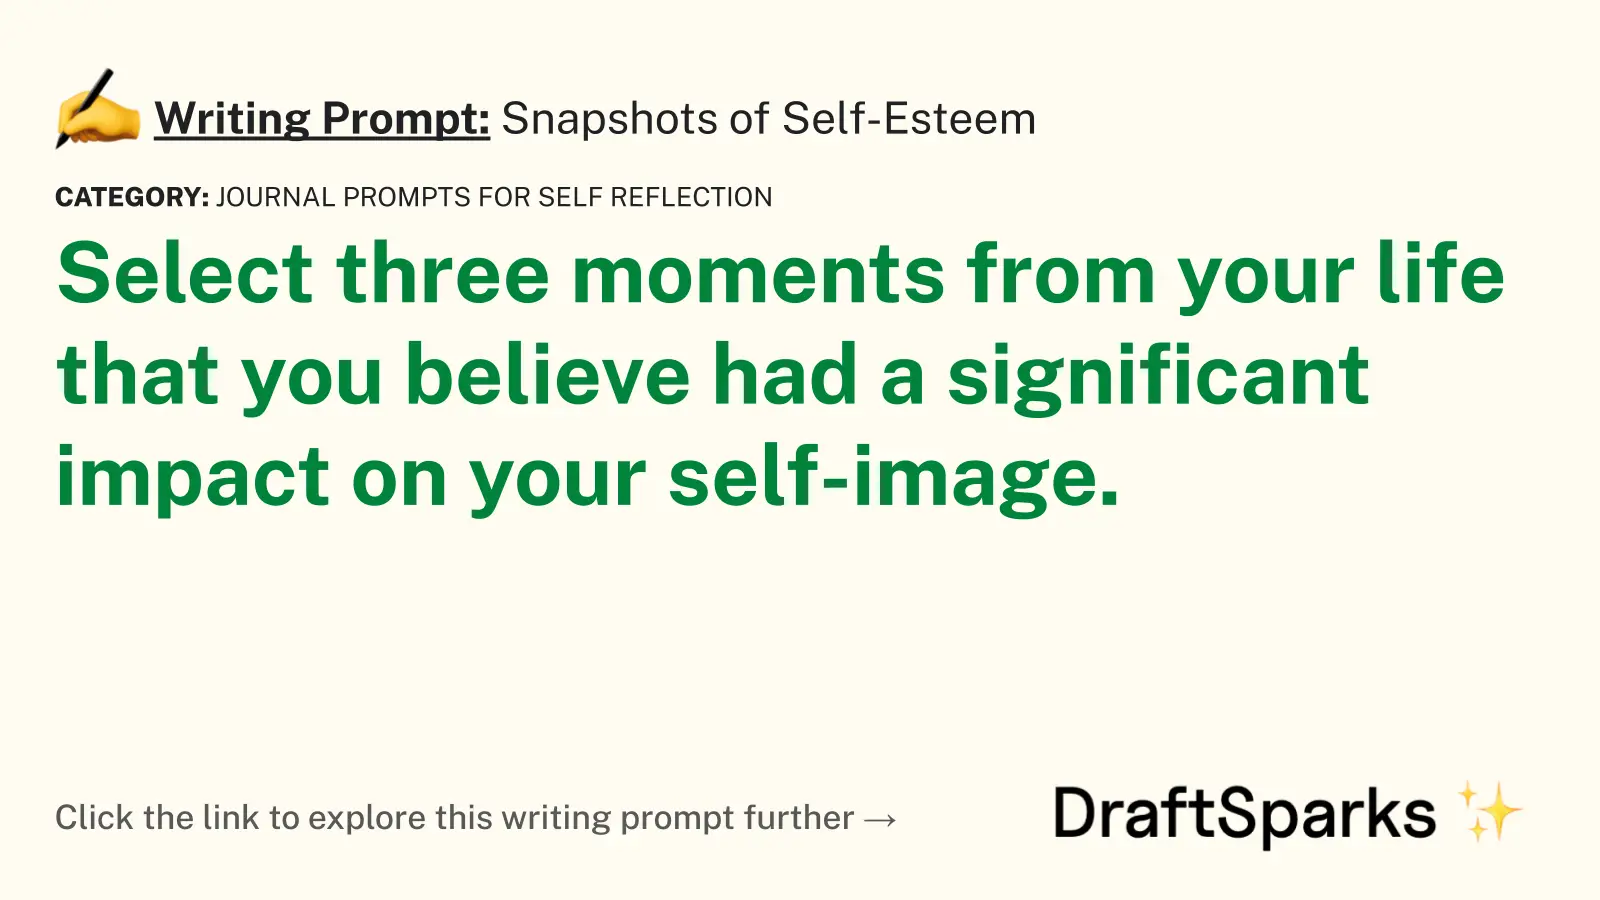 Snapshots of Self-Esteem